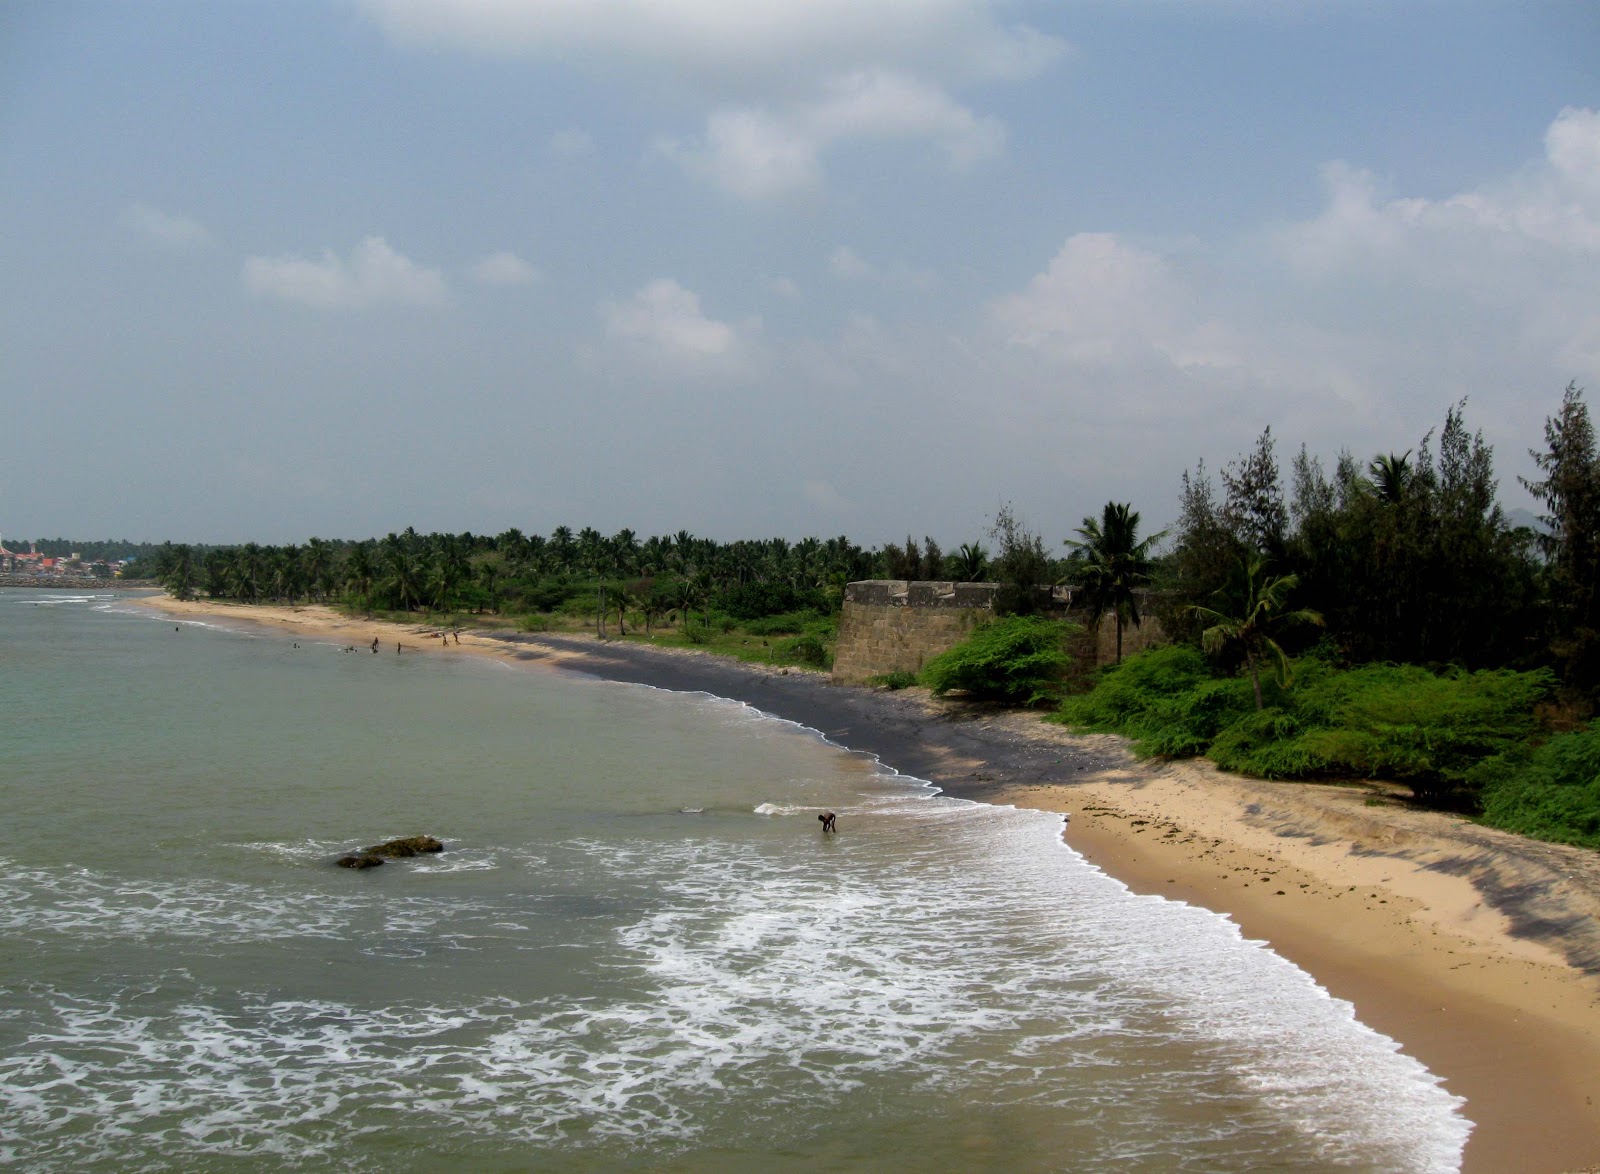 Zdjęcie Vattakottai Beach z powierzchnią jasny piasek